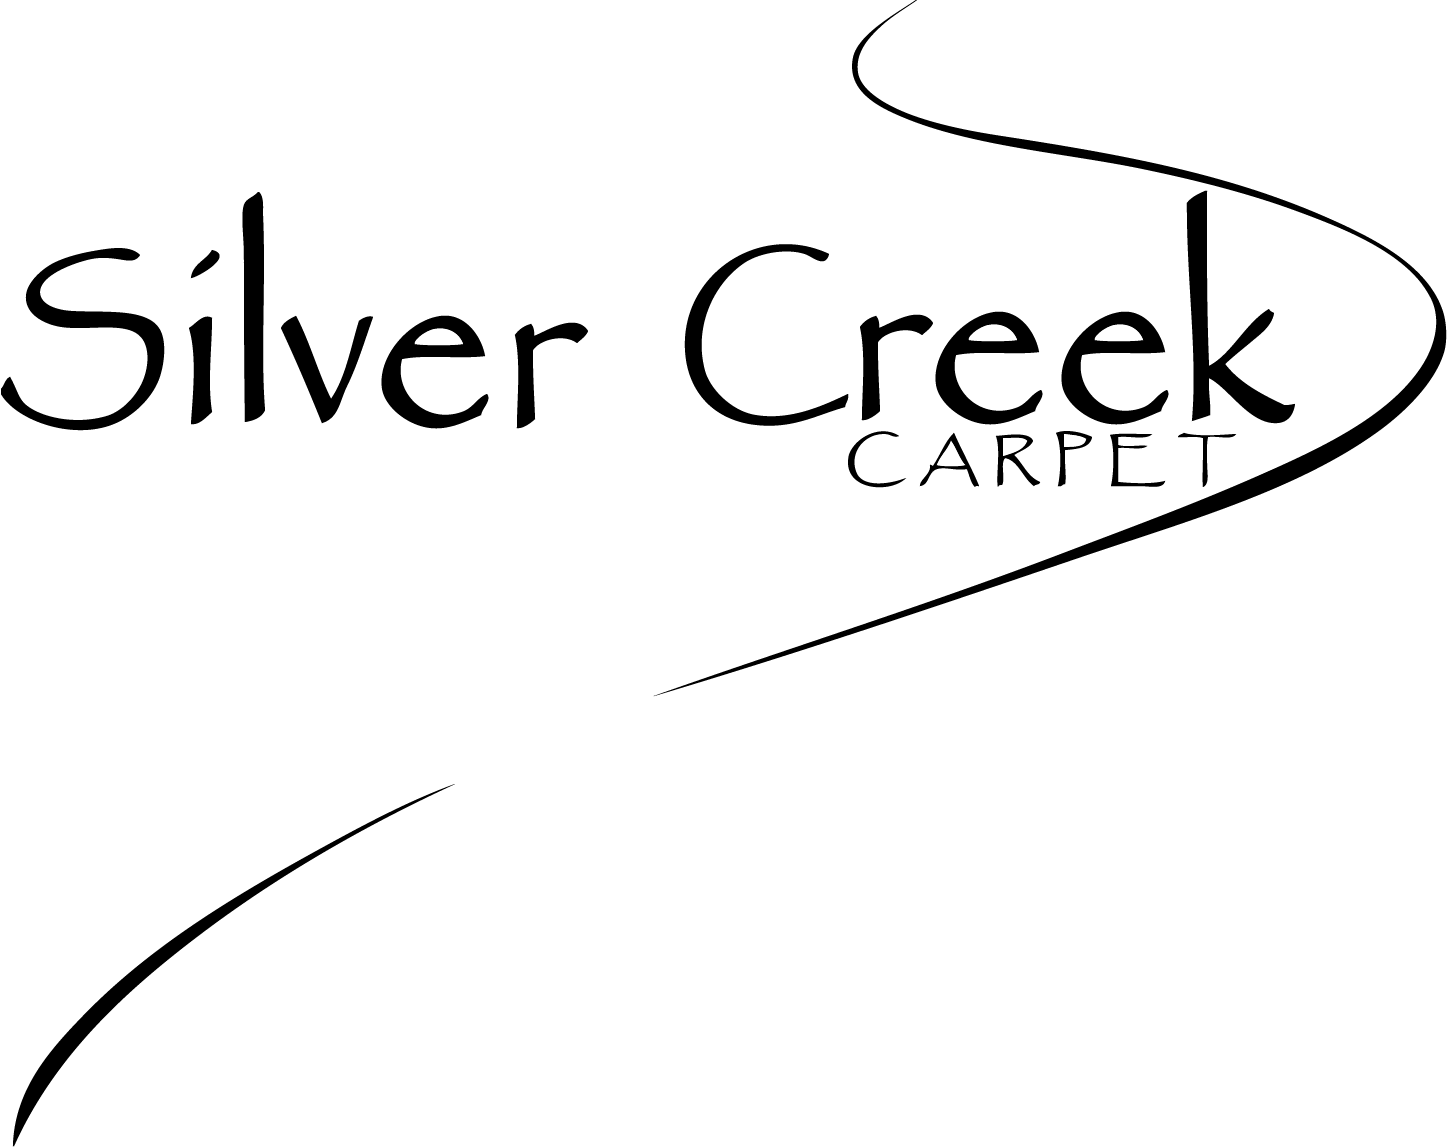 Silver Creek Carpet